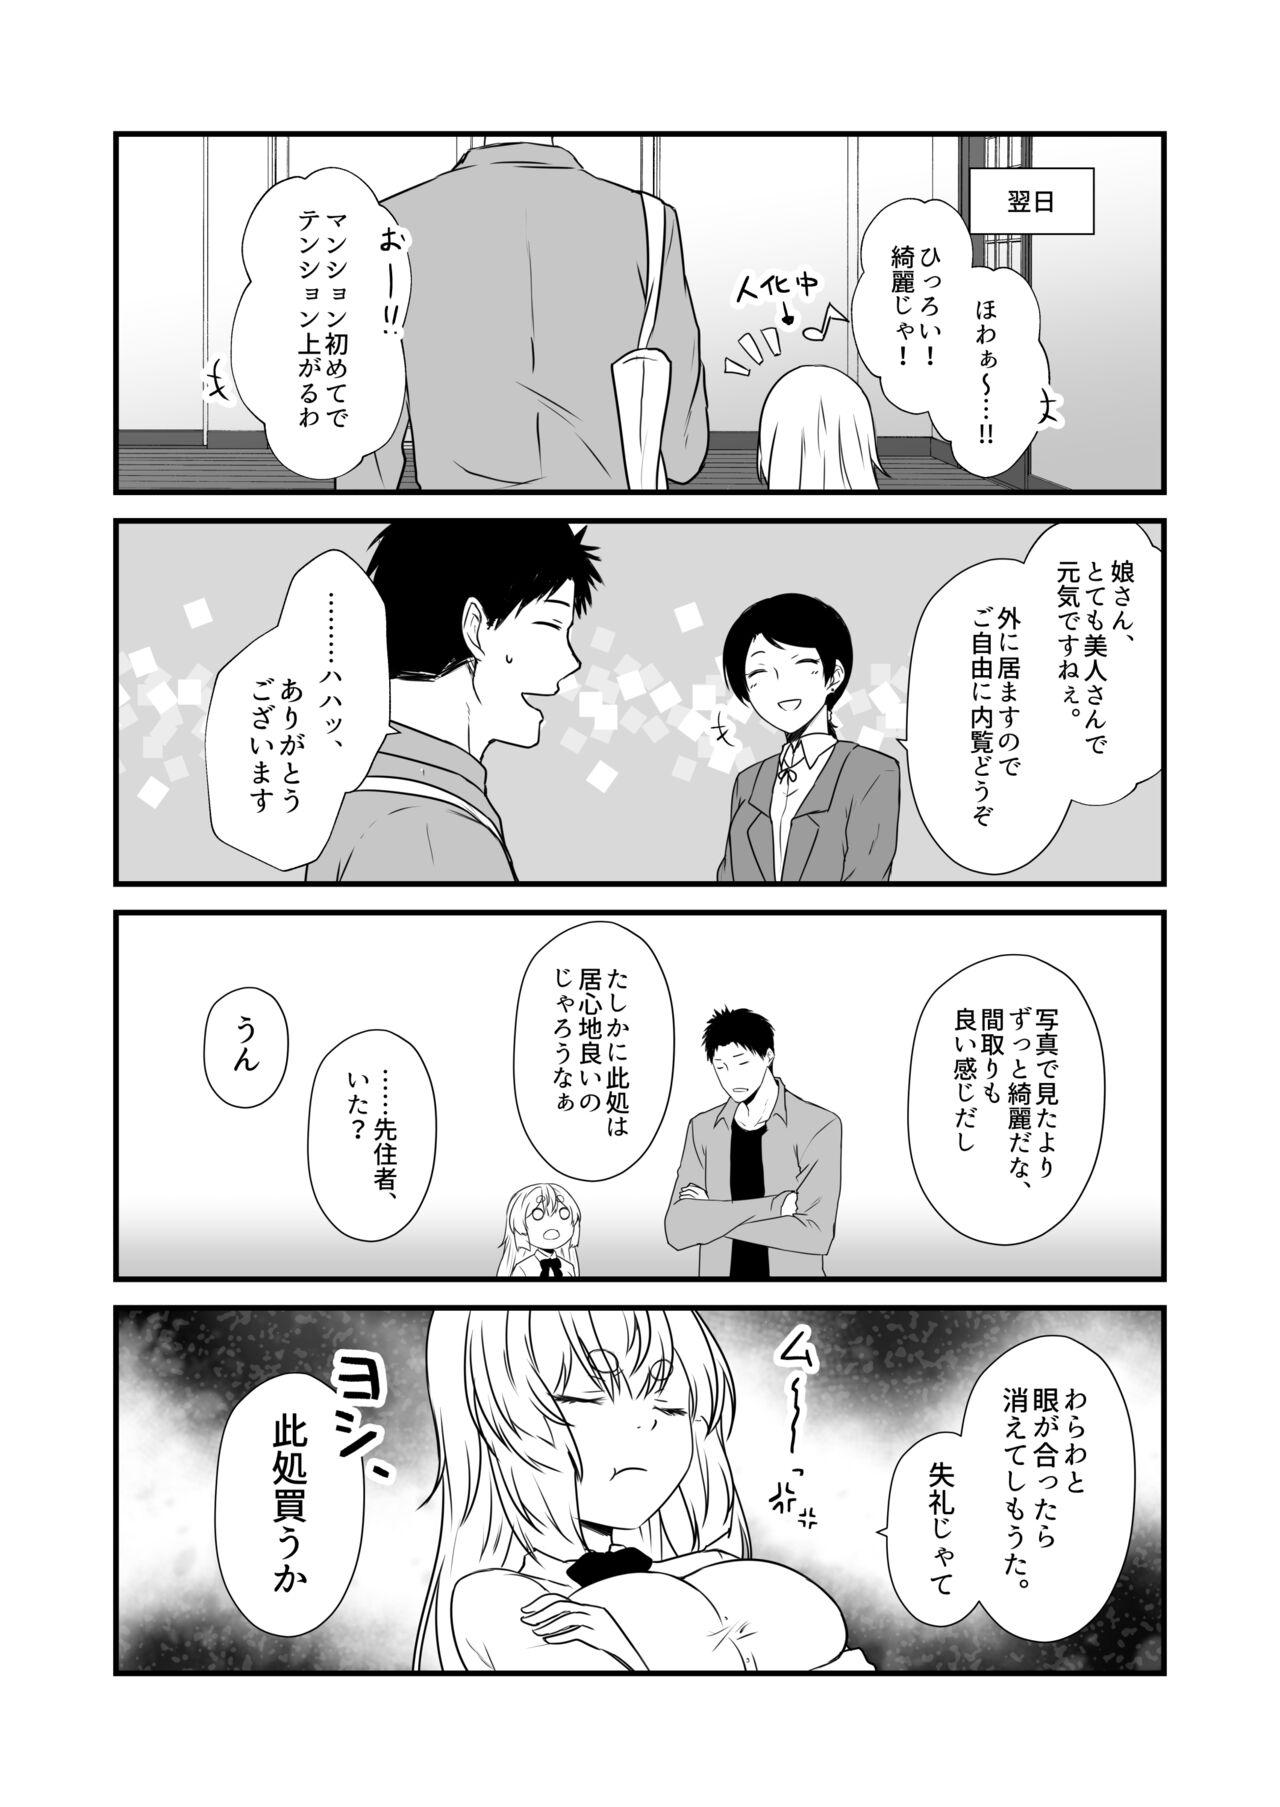 No Condom Kohaku Biyori Vol. 8 - Original Sharing - Page 11